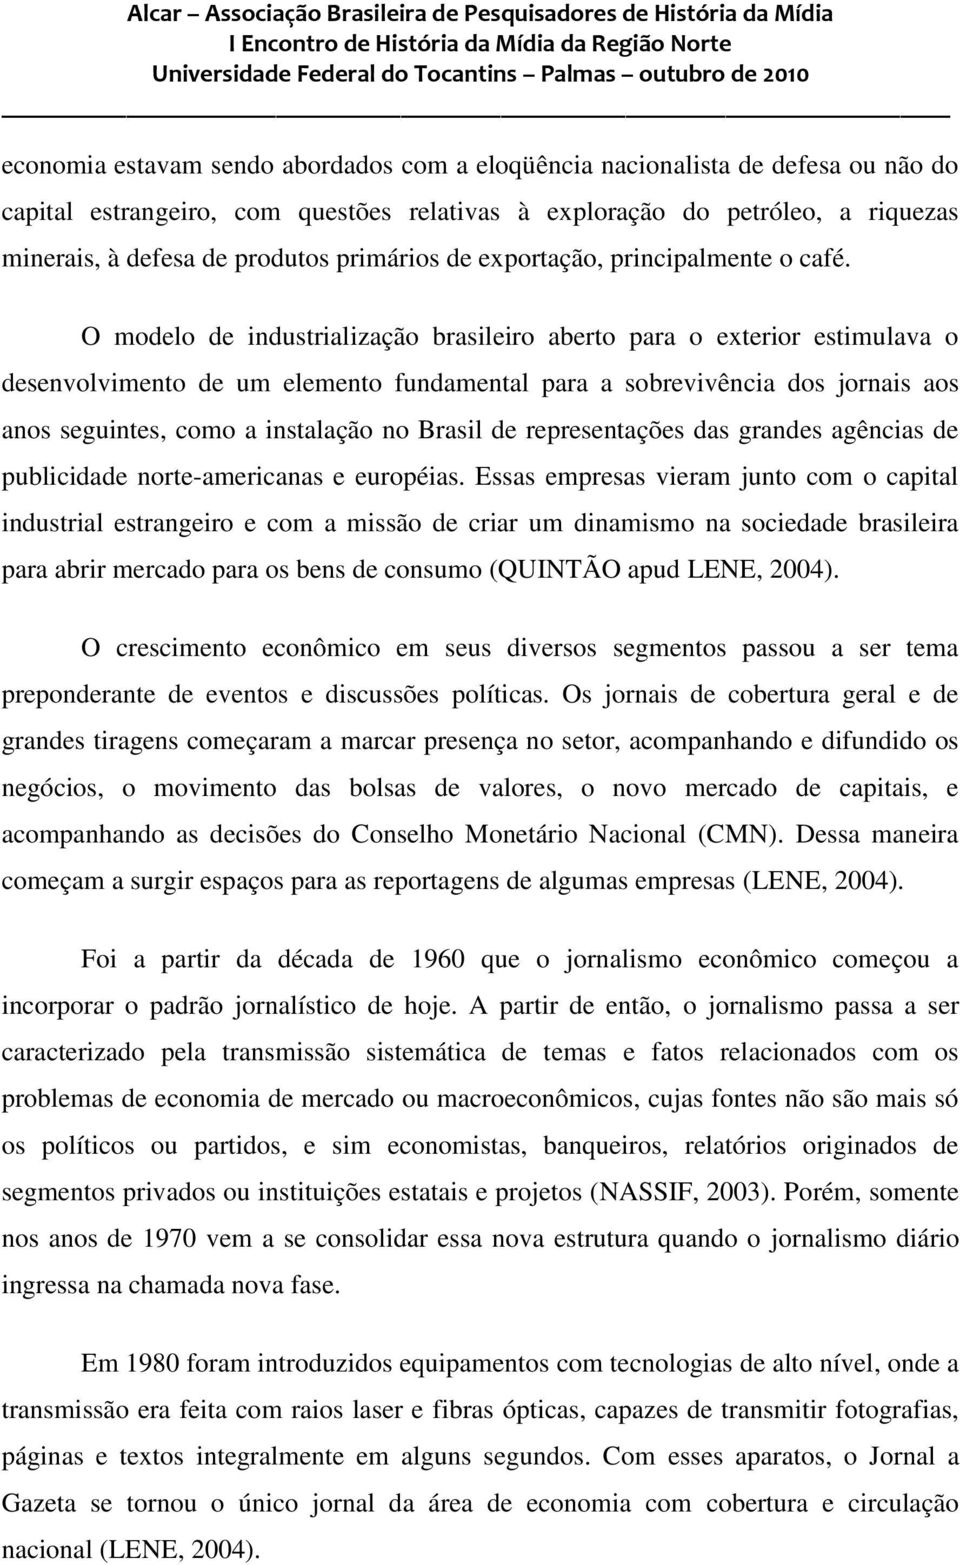 O modelo de industrialização brasileiro aberto para o exterior estimulava o desenvolvimento de um elemento fundamental para a sobrevivência dos jornais aos anos seguintes, como a instalação no Brasil